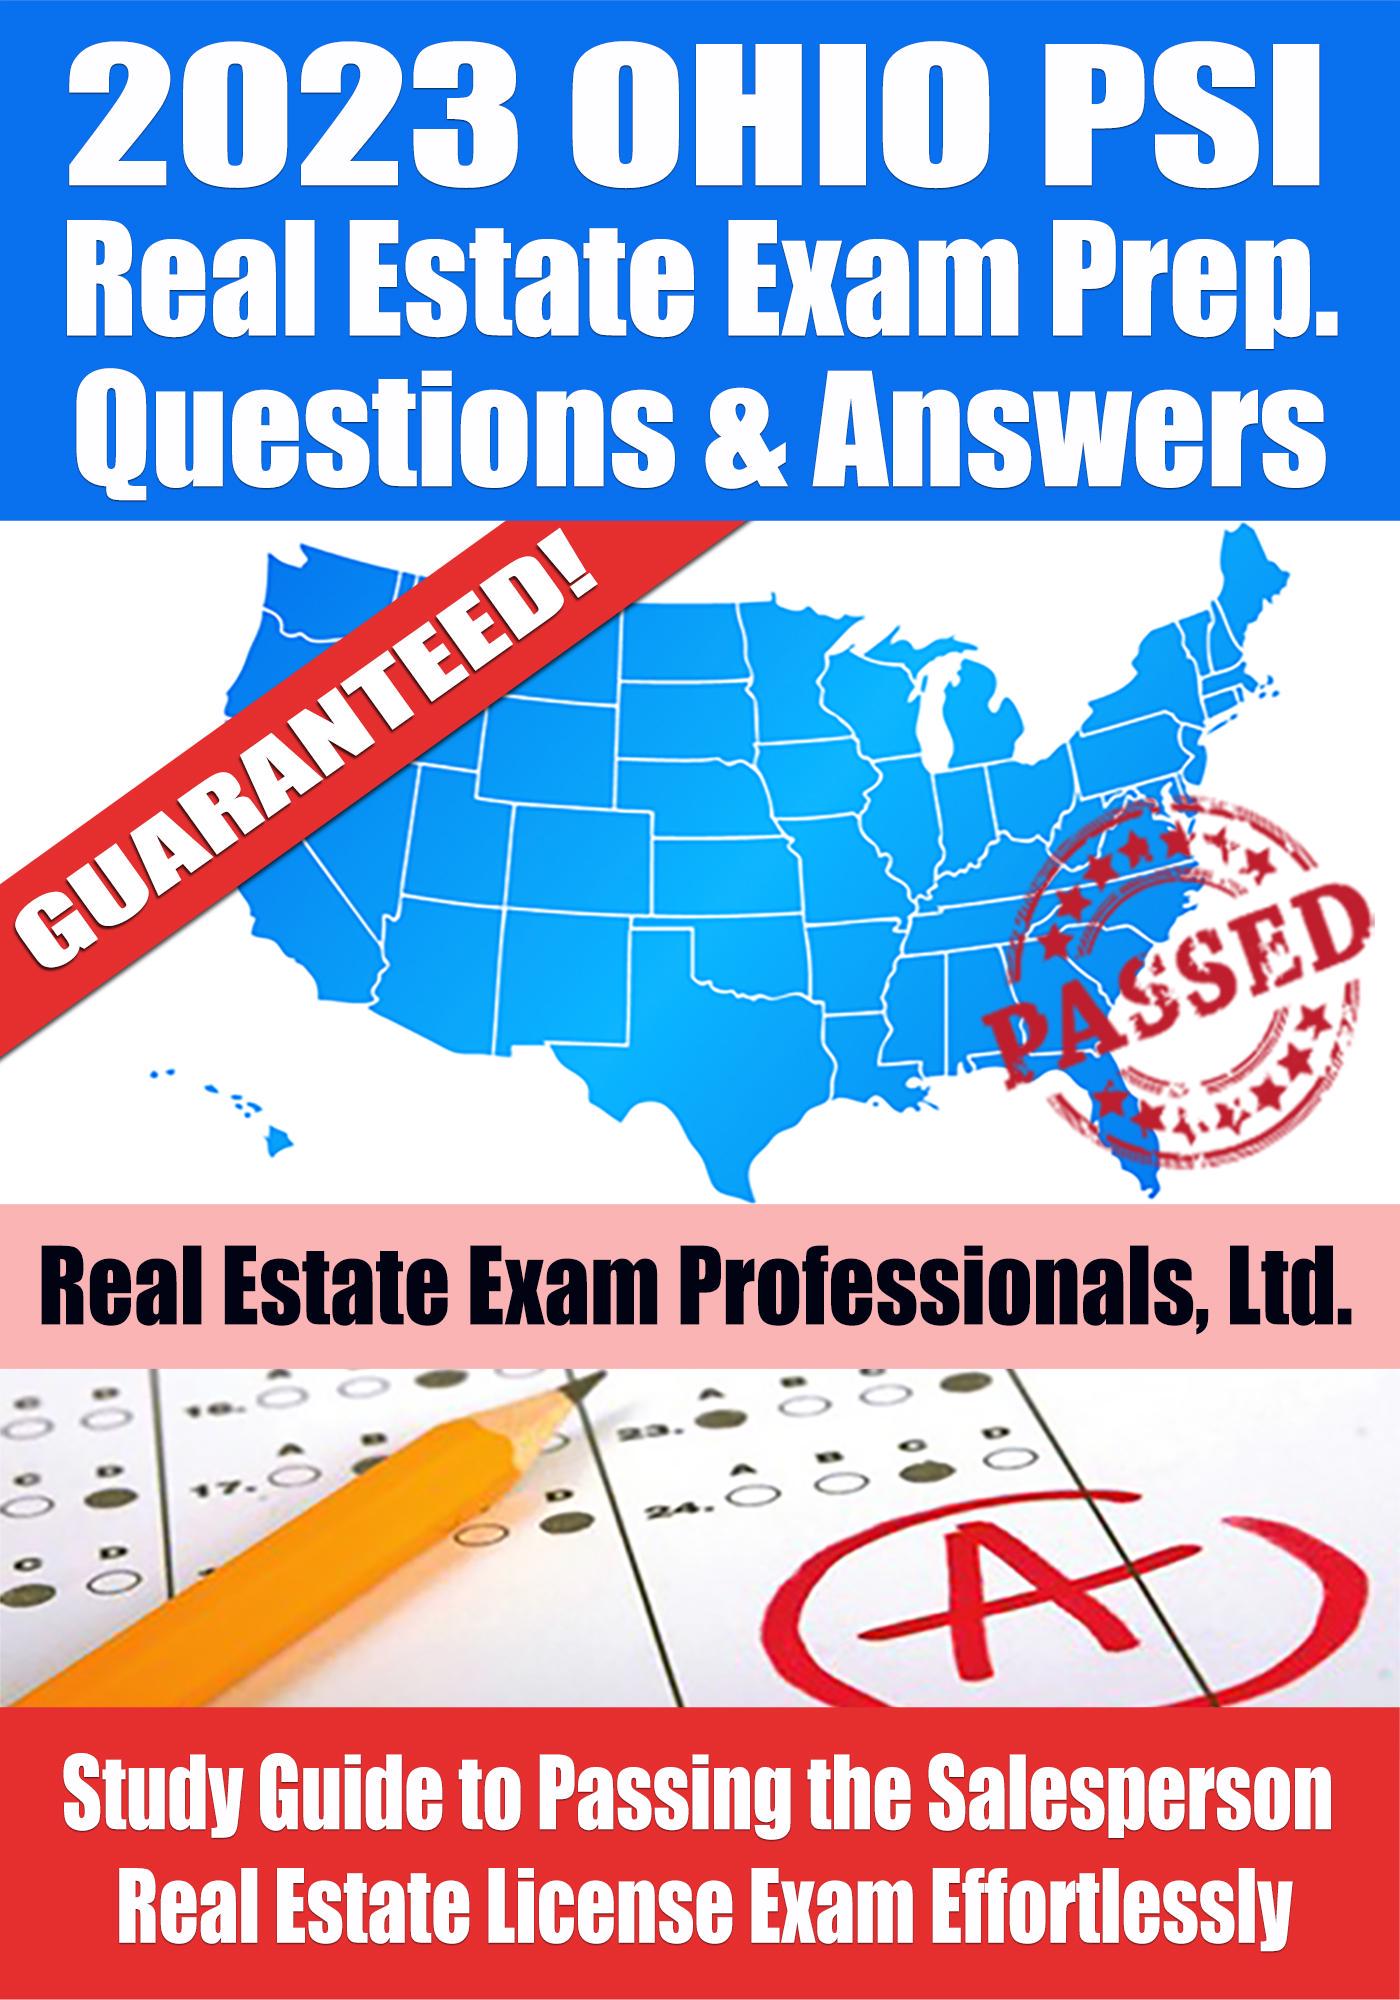 psi real estate exam passing score